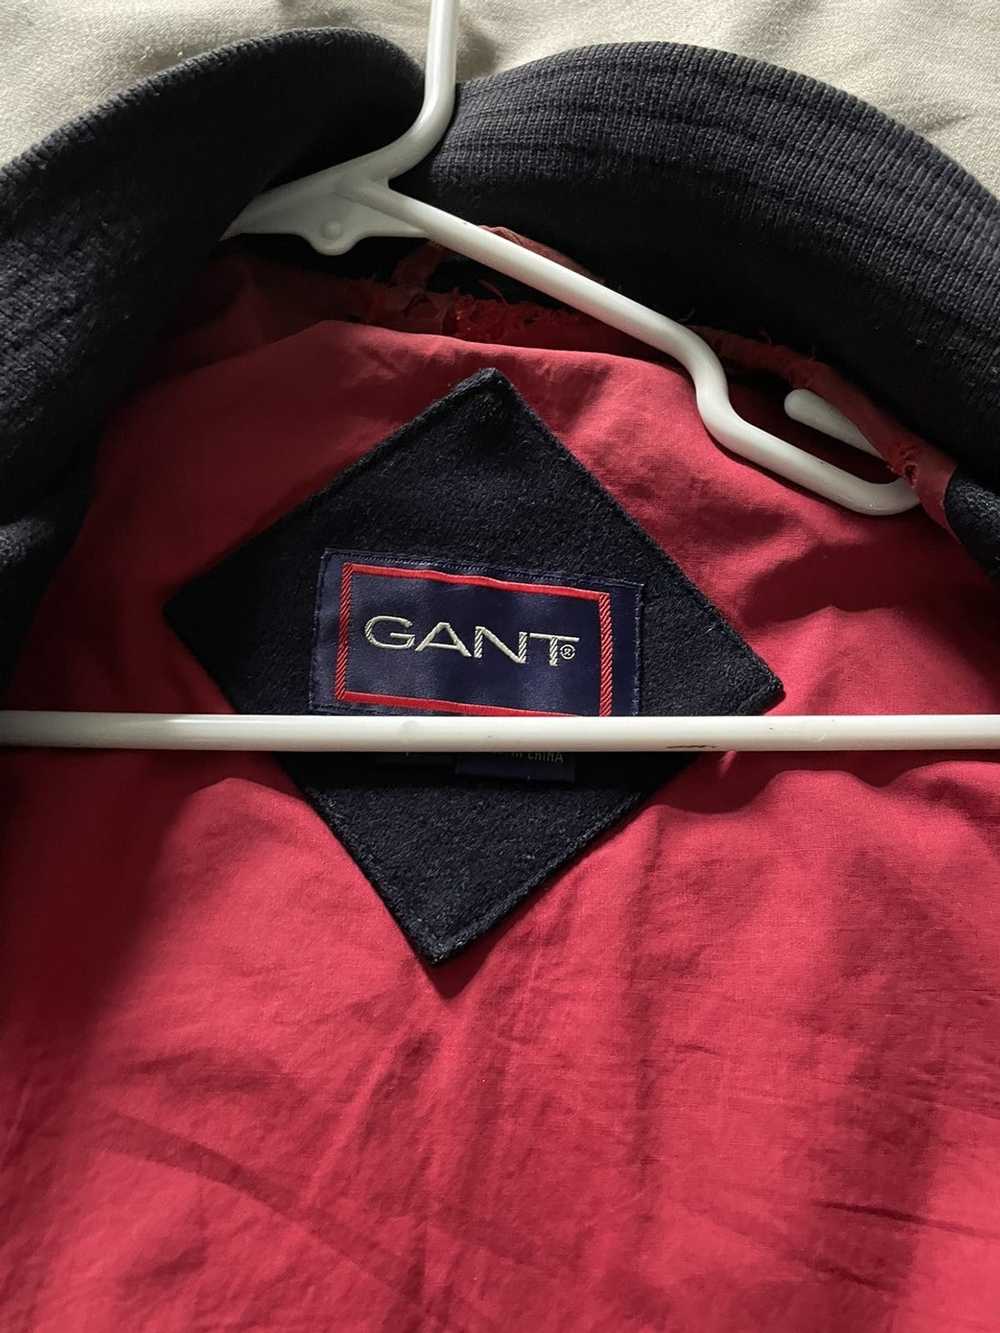 Gant Gant wool bomber jacket - image 2